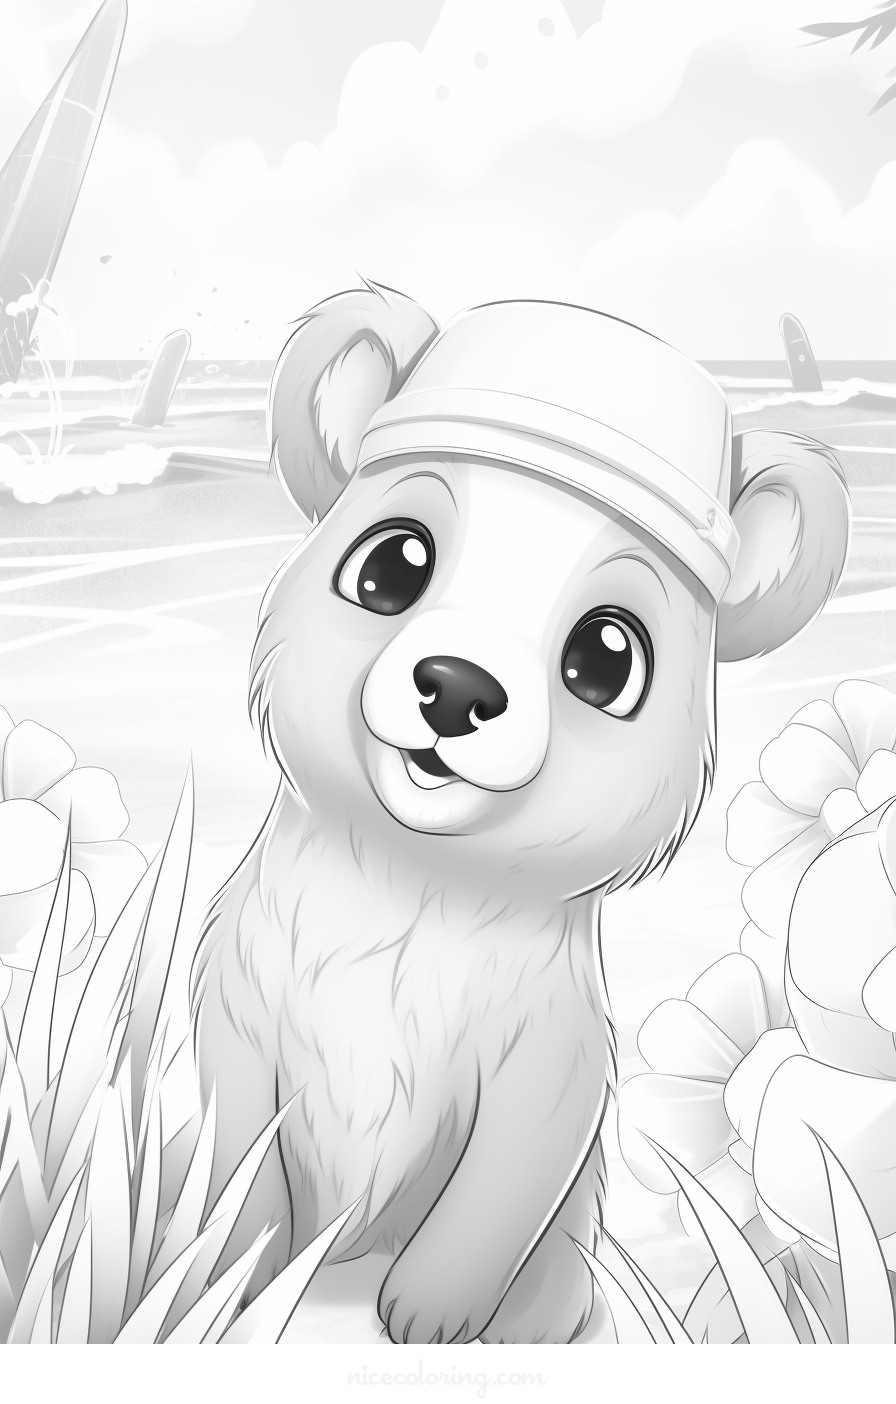 Page de coloriage d'un ourson assis dans une scène forestière